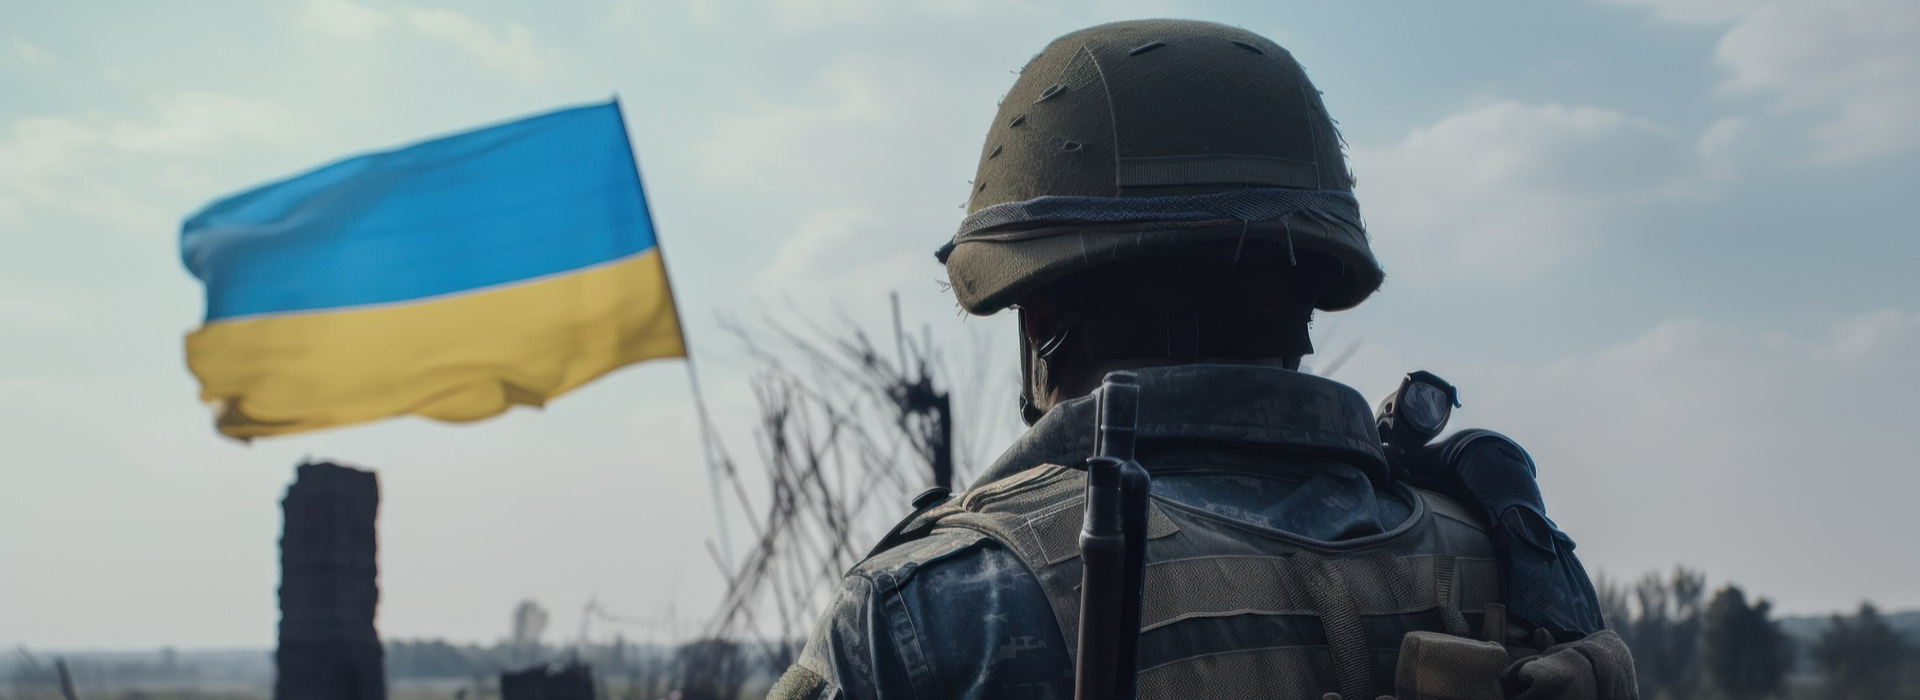 Wciąż nie możemy mówić o kontrofensywie. Gen. Waldemar Skrzypczak o działaniach wojennych w Ukrainie